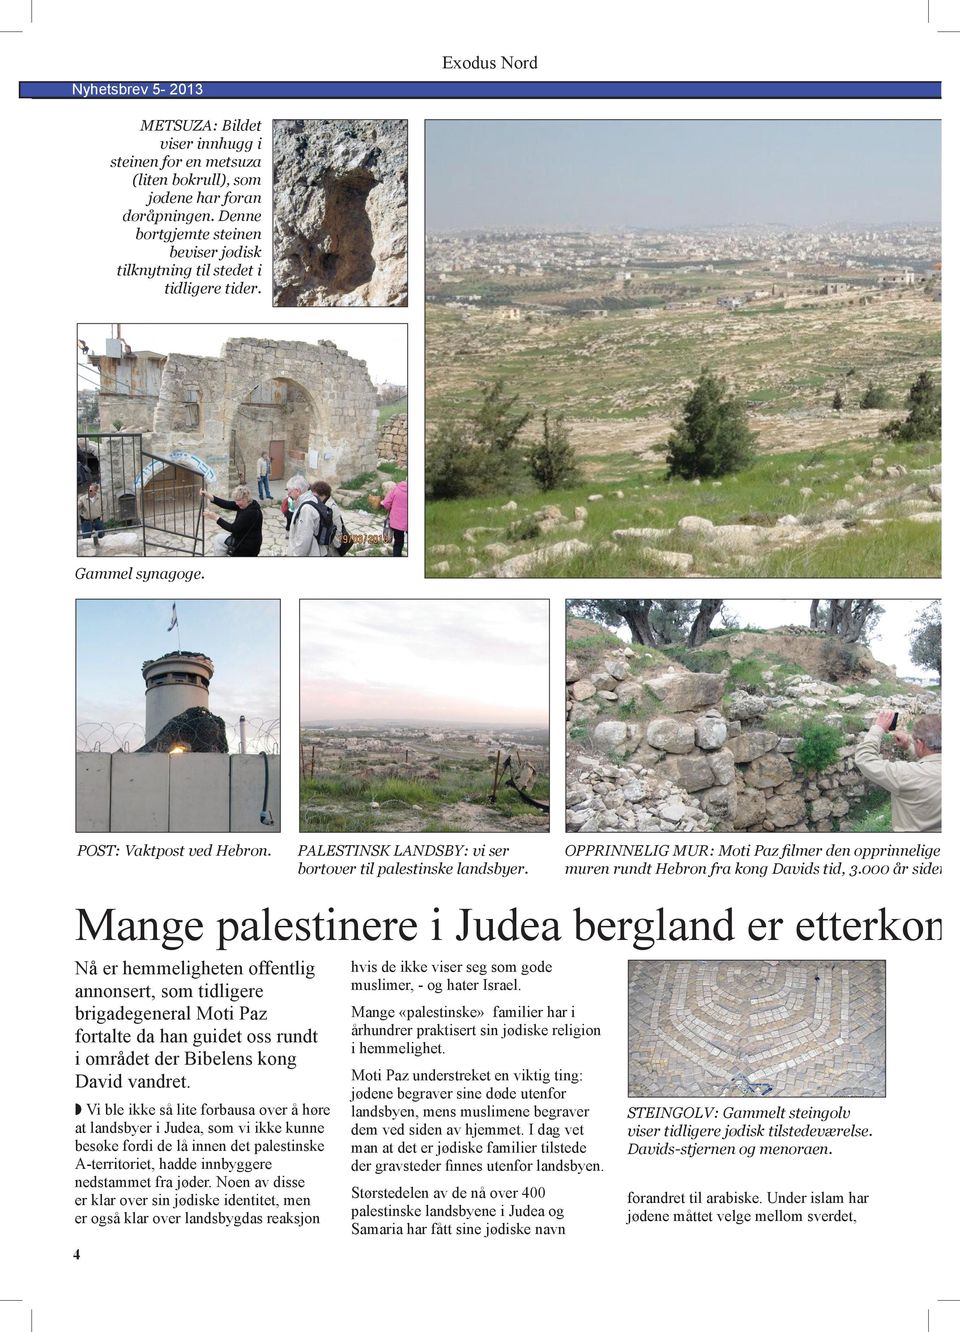 OPPRINNELIG MUR: Moti Paz filmer den opprinnelige muren rundt Hebron fra kong Davids tid, 3.000 år siden.